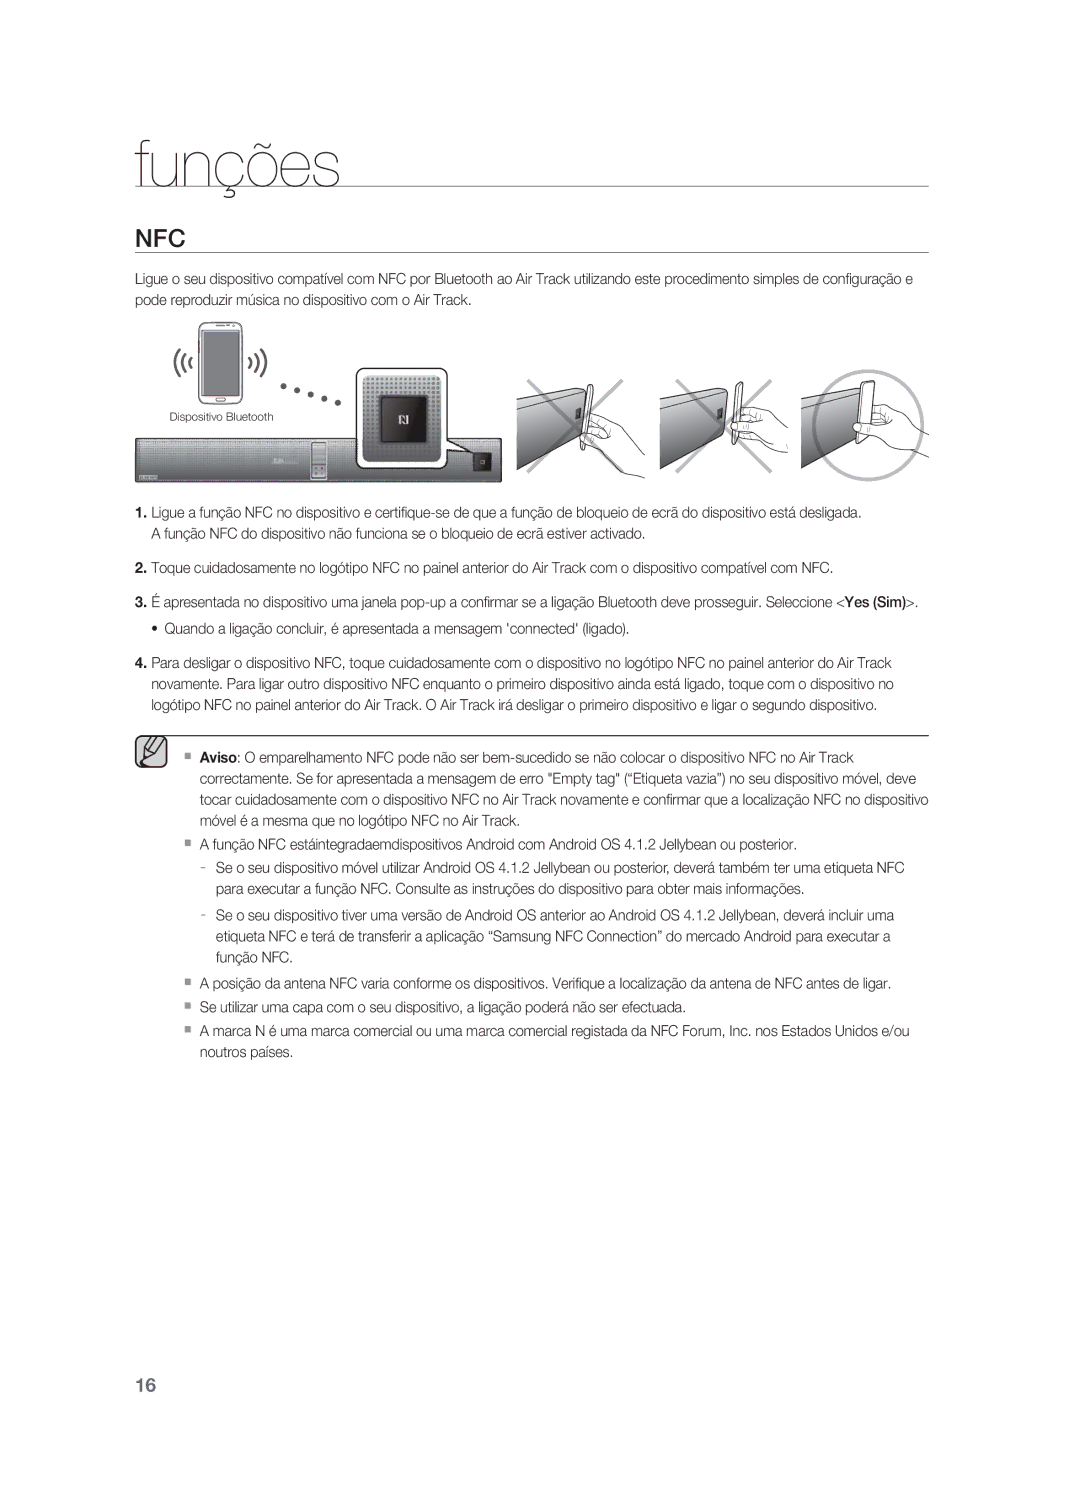 Samsung HW-F850/ZF manual Nfc 